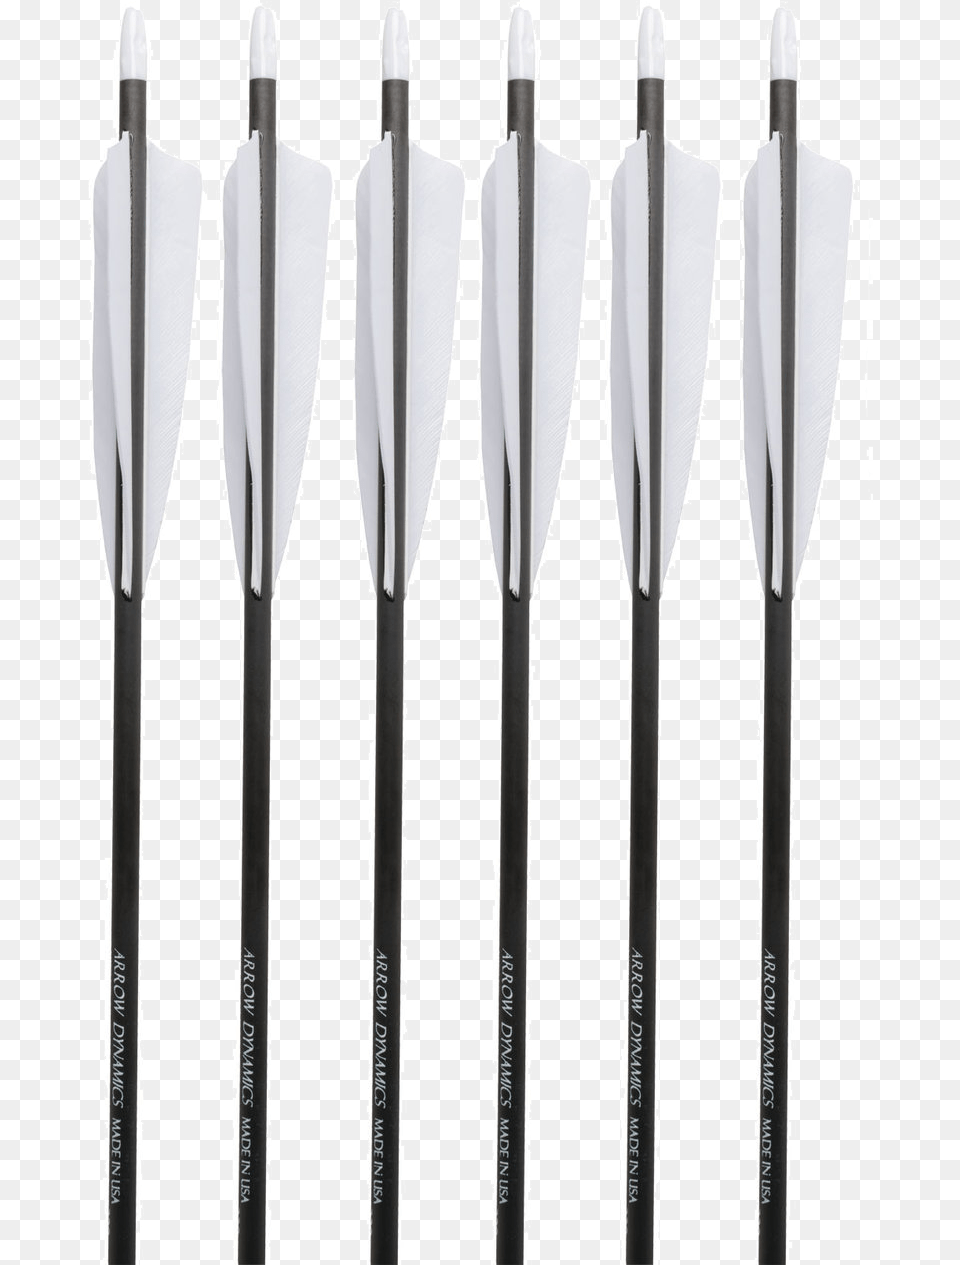 Aritaum Waterproof Eye Pencil, Arrow, Weapon Png Image